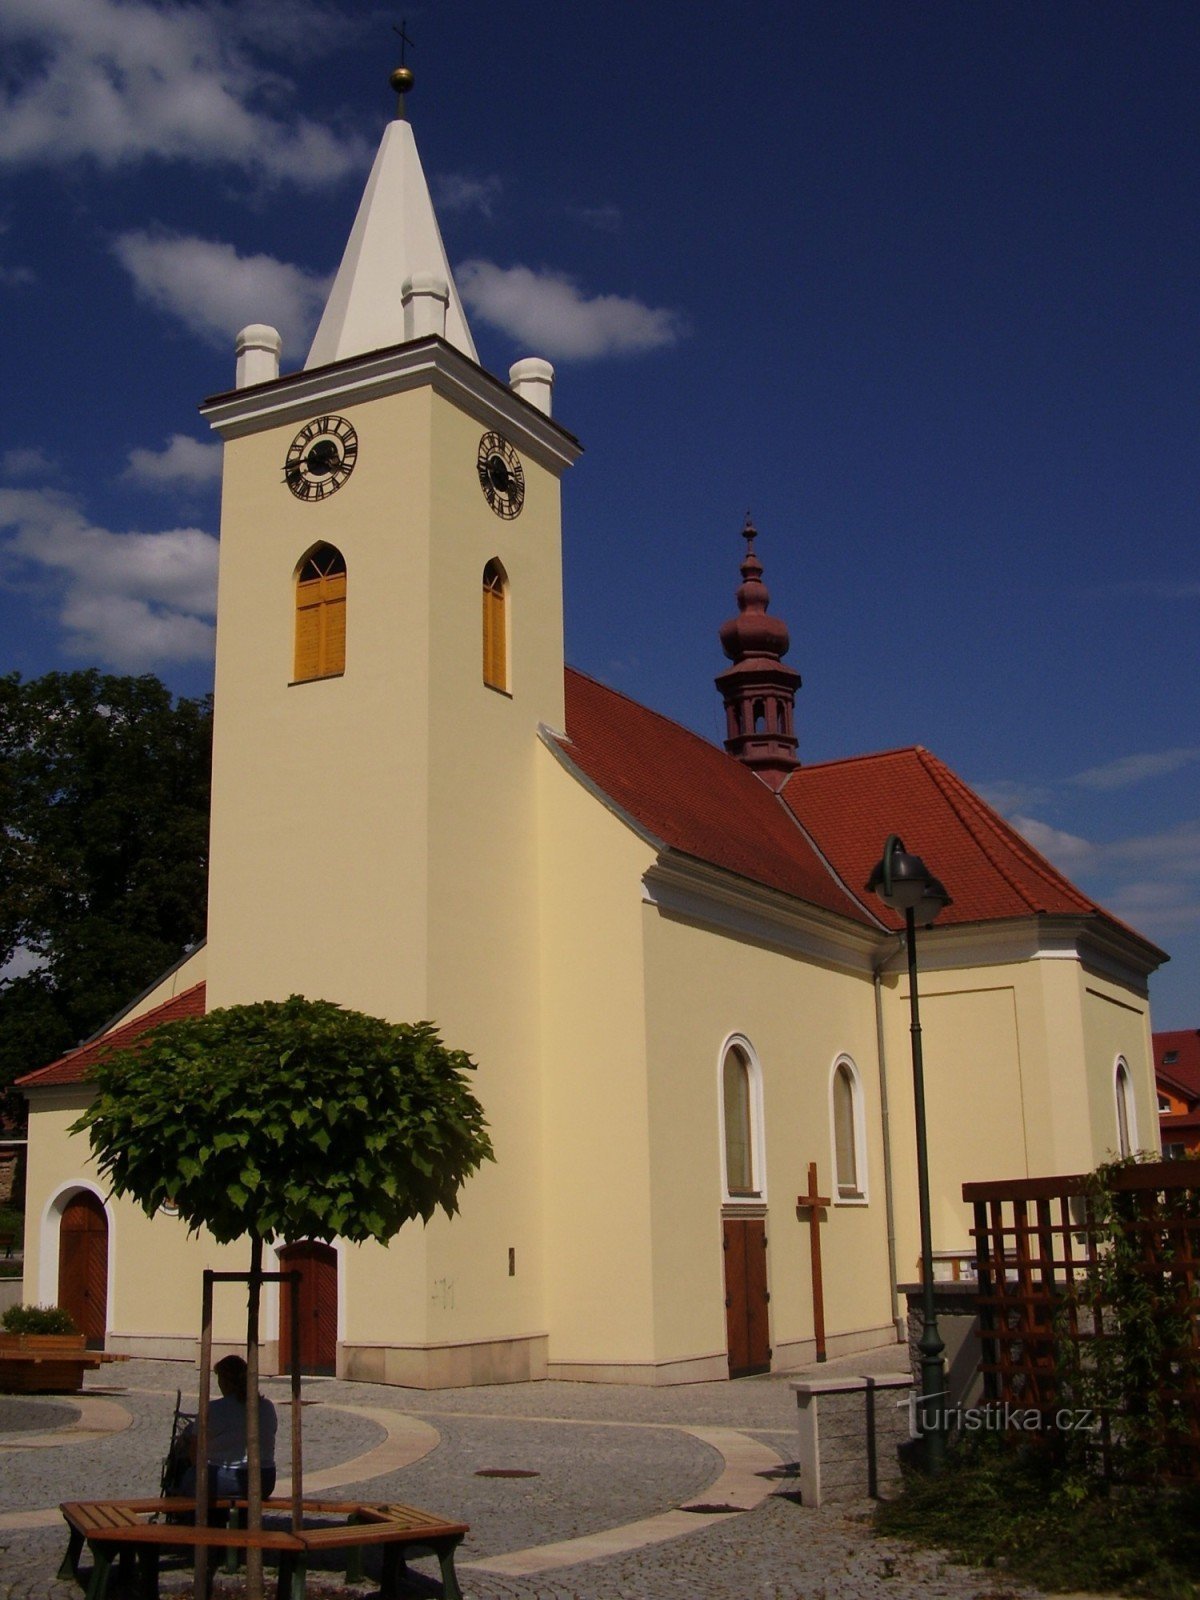 聖教会ブルノのヴァウジーネ - Řečkovice (芸術的な装飾) とその周辺